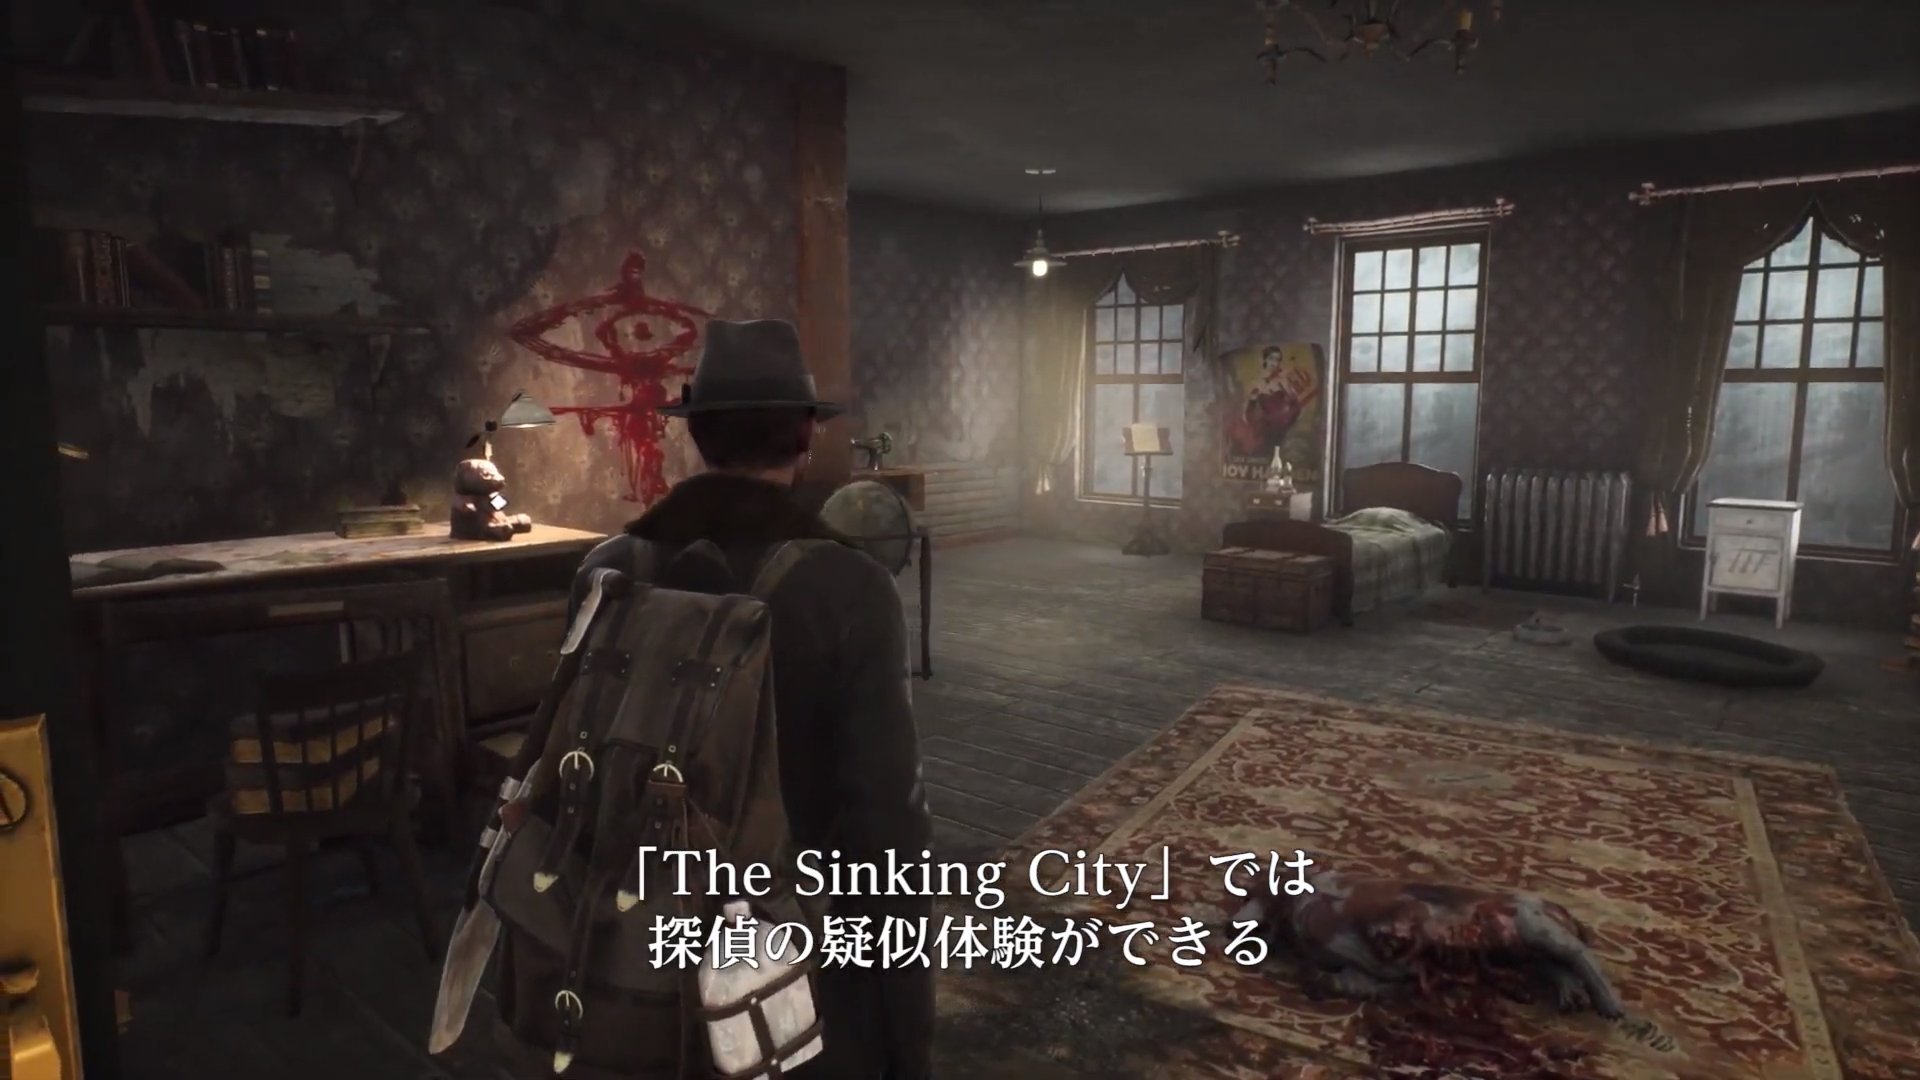 クトゥルフ神話モチーフの探偵adv The Sinking City 日本語字幕付きゲーム紹介トレーラーが公開 ゲーム情報 ゲームのはなし